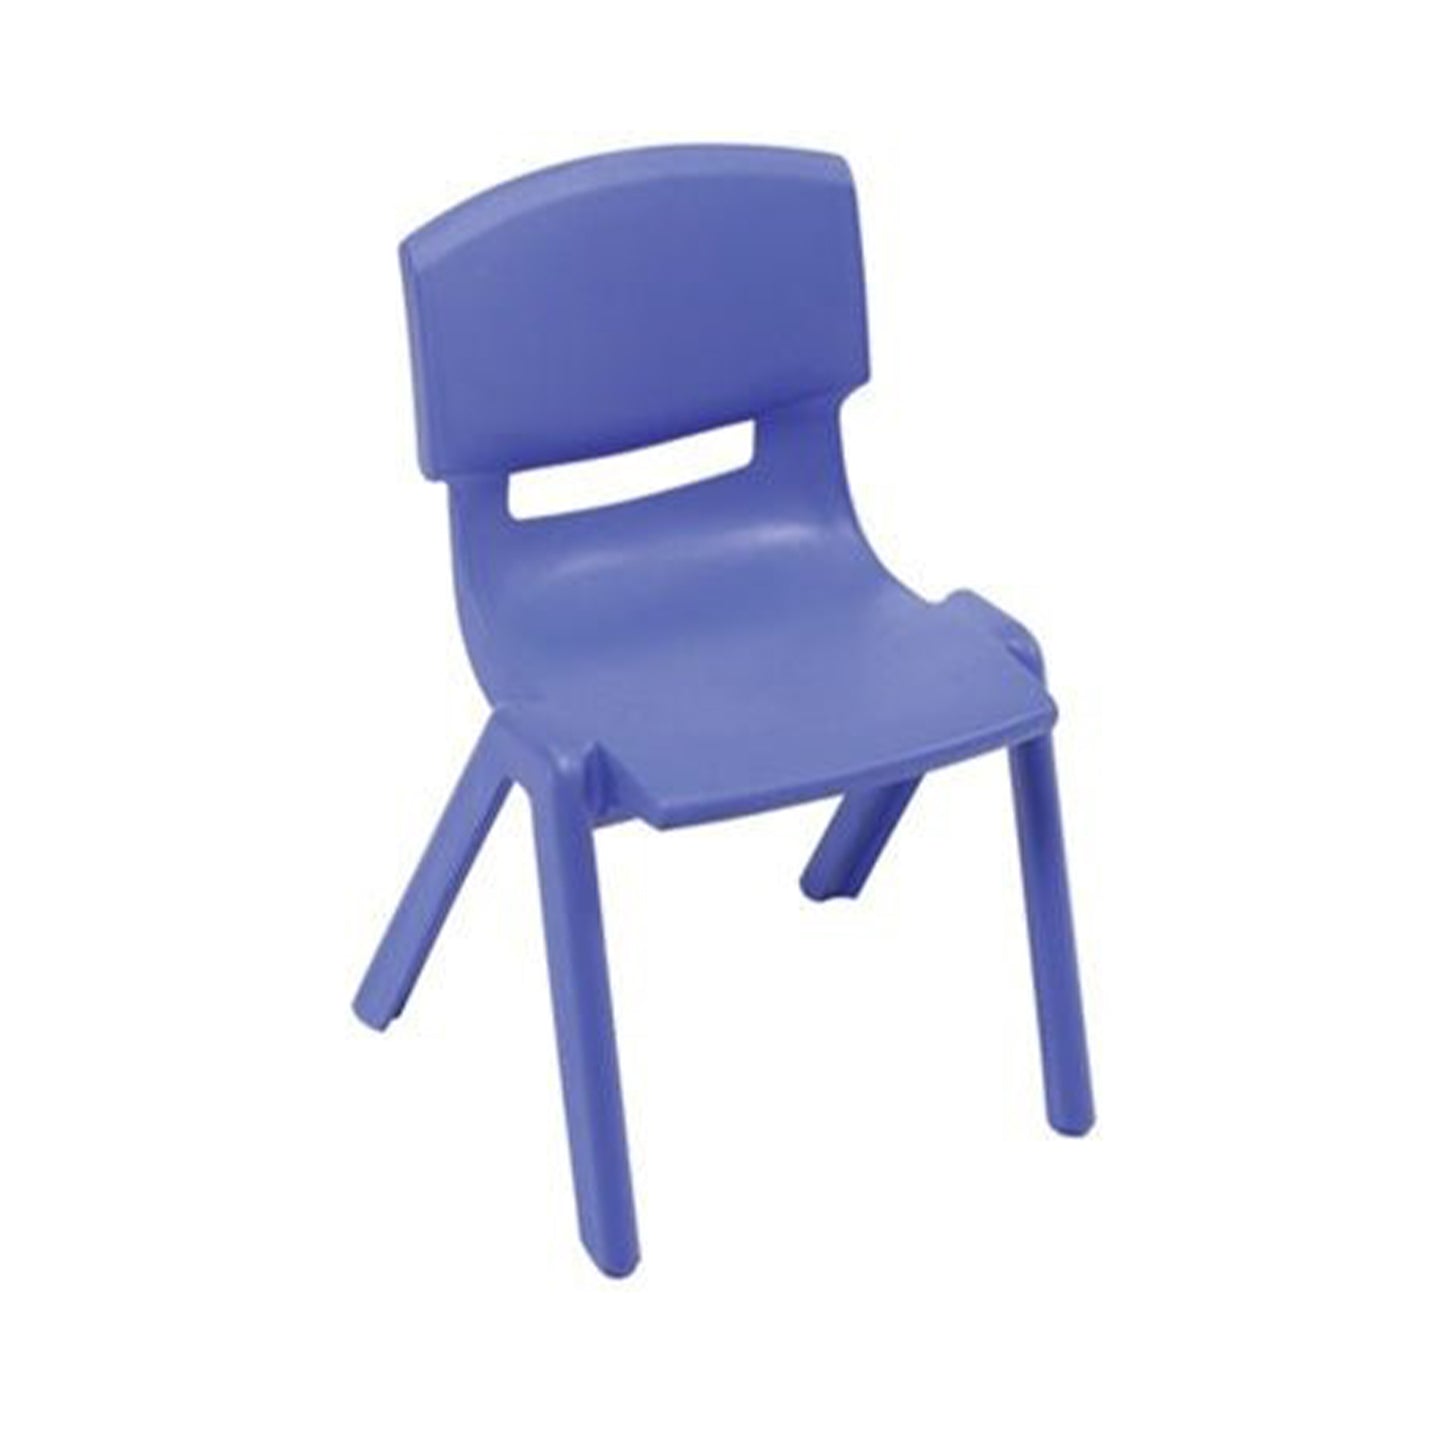 AmTab Classroom School Chair for Kindergarten through 2nd Grade - Stackable - 14.5"W x 15.75"L x 23.25"H - Seat Height 13.5"H  (AMT-CLASSCHAIR-3)